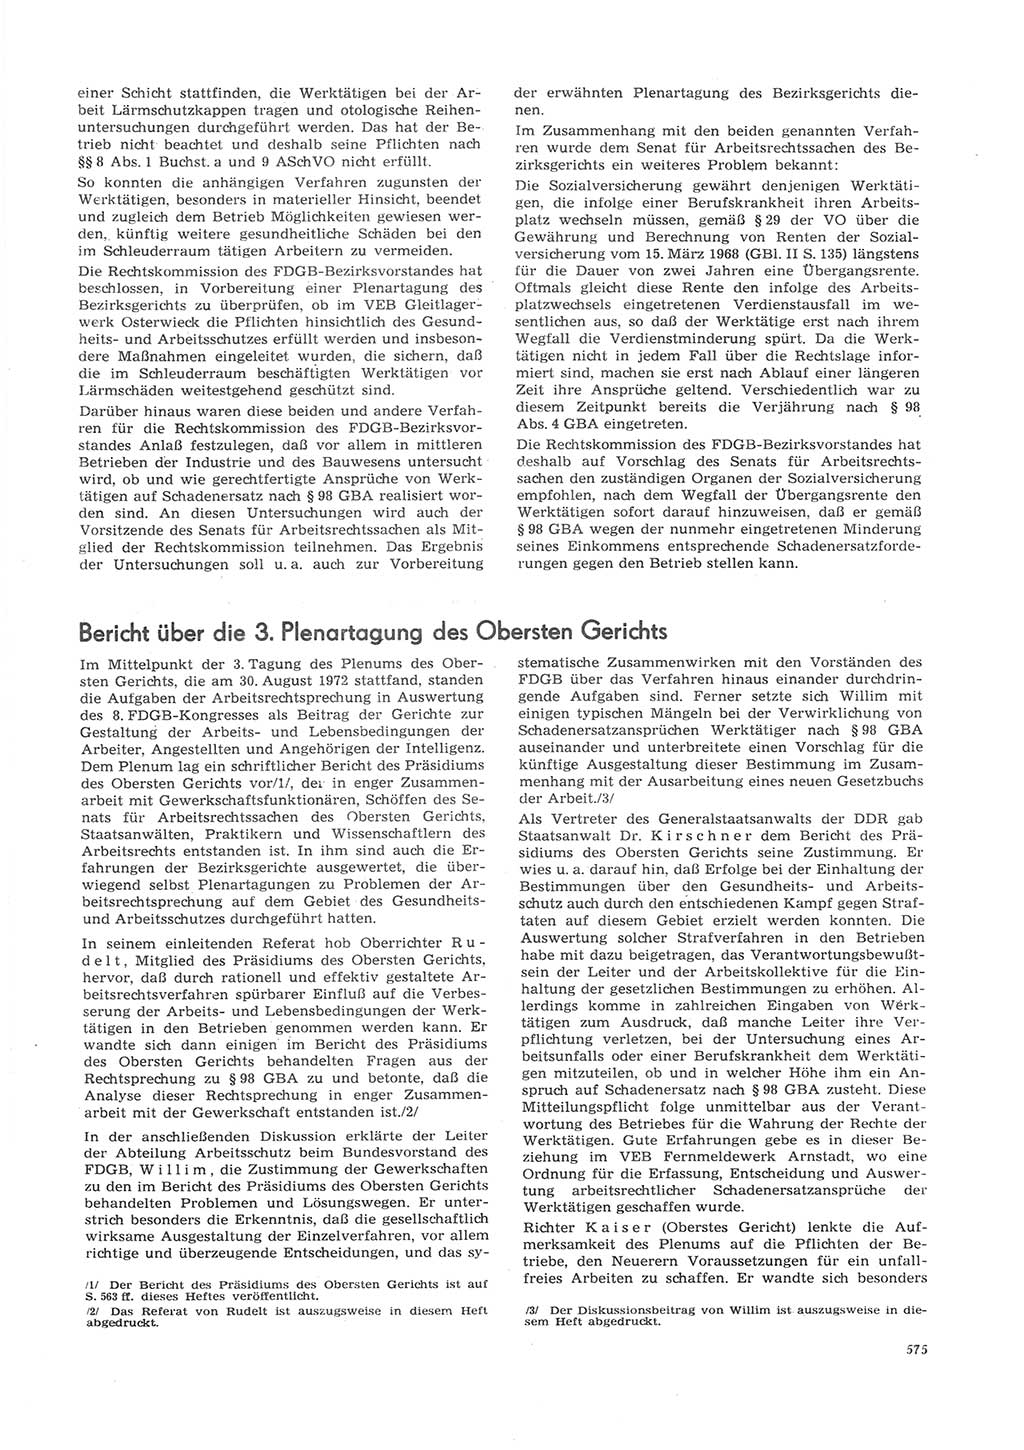 Neue Justiz (NJ), Zeitschrift für Recht und Rechtswissenschaft [Deutsche Demokratische Republik (DDR)], 26. Jahrgang 1972, Seite 575 (NJ DDR 1972, S. 575)